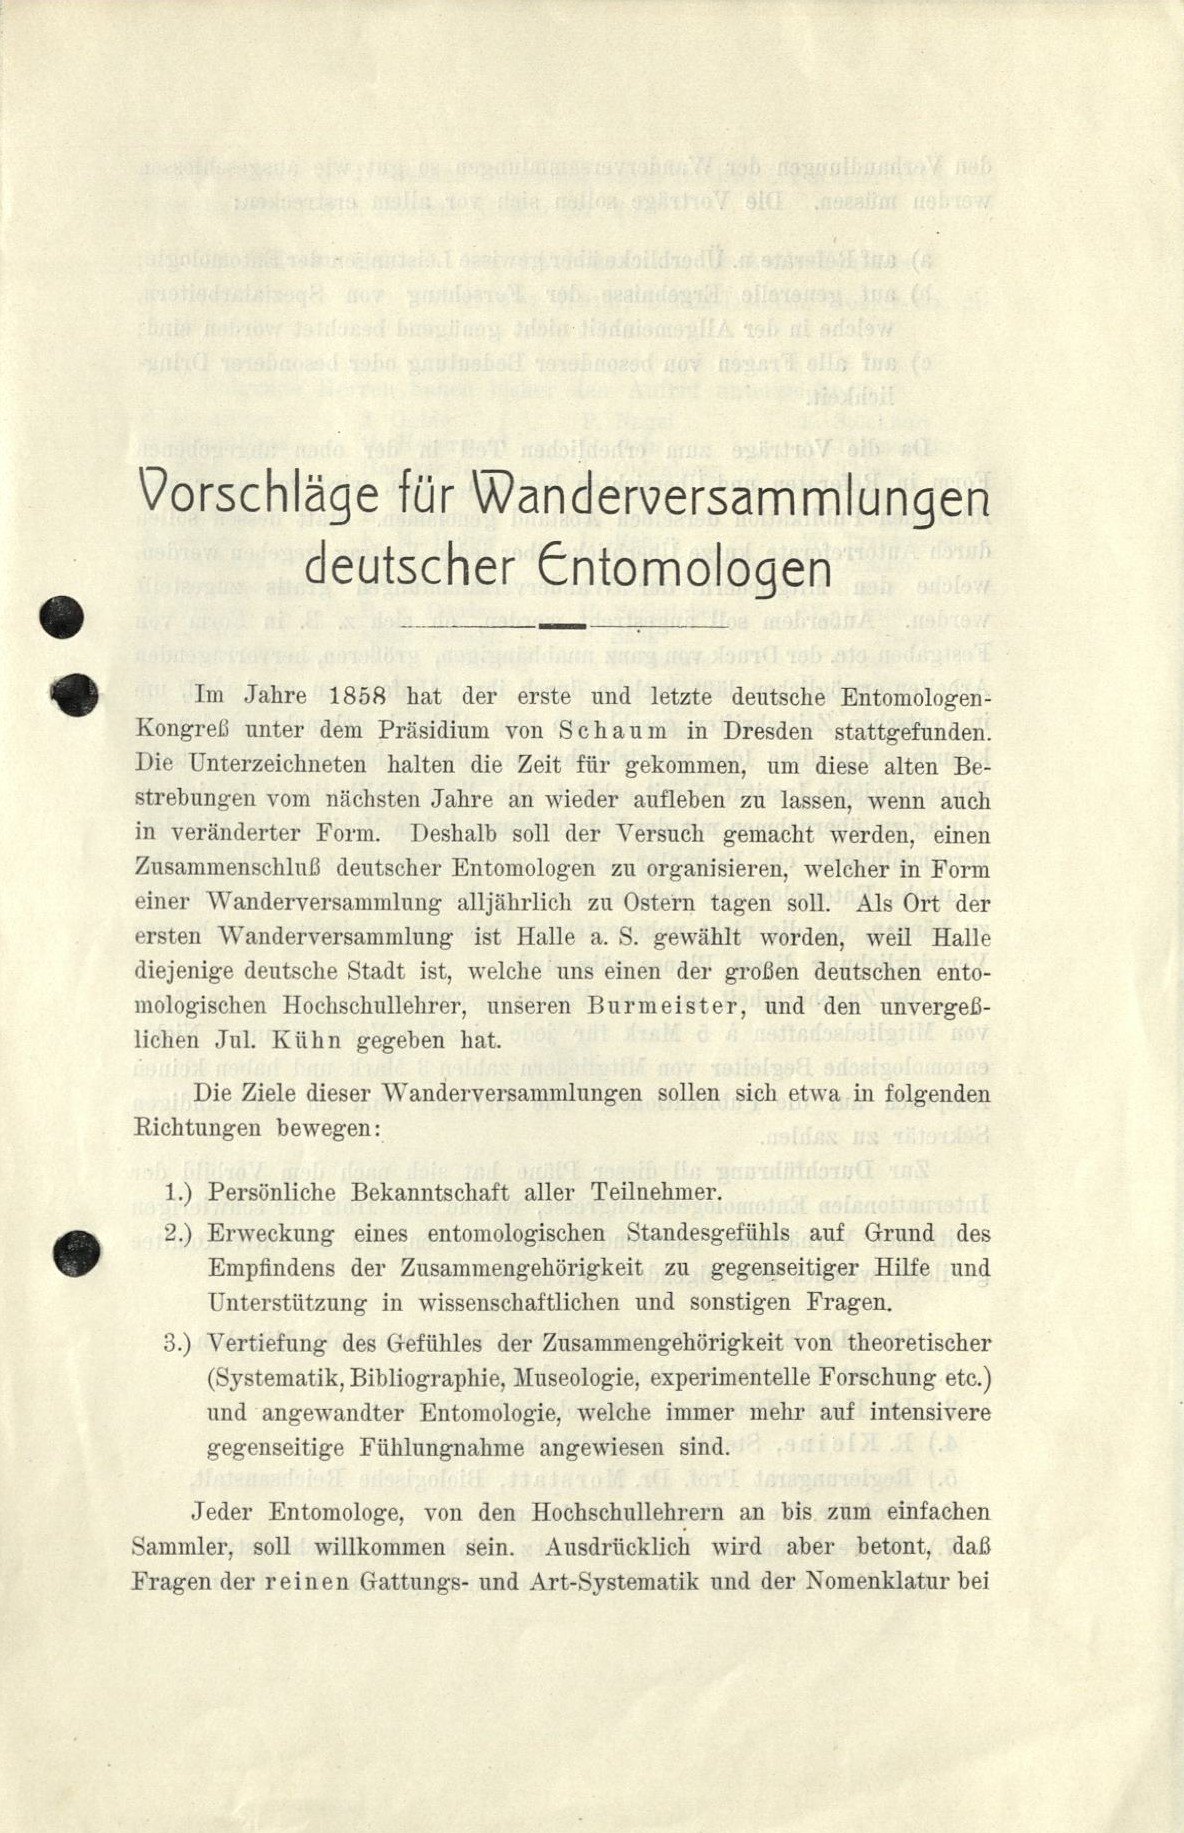 Vorschläge für Wanderversammlungen (Senckenberg Deutsches Entomologisches Institut CC BY-NC-SA)